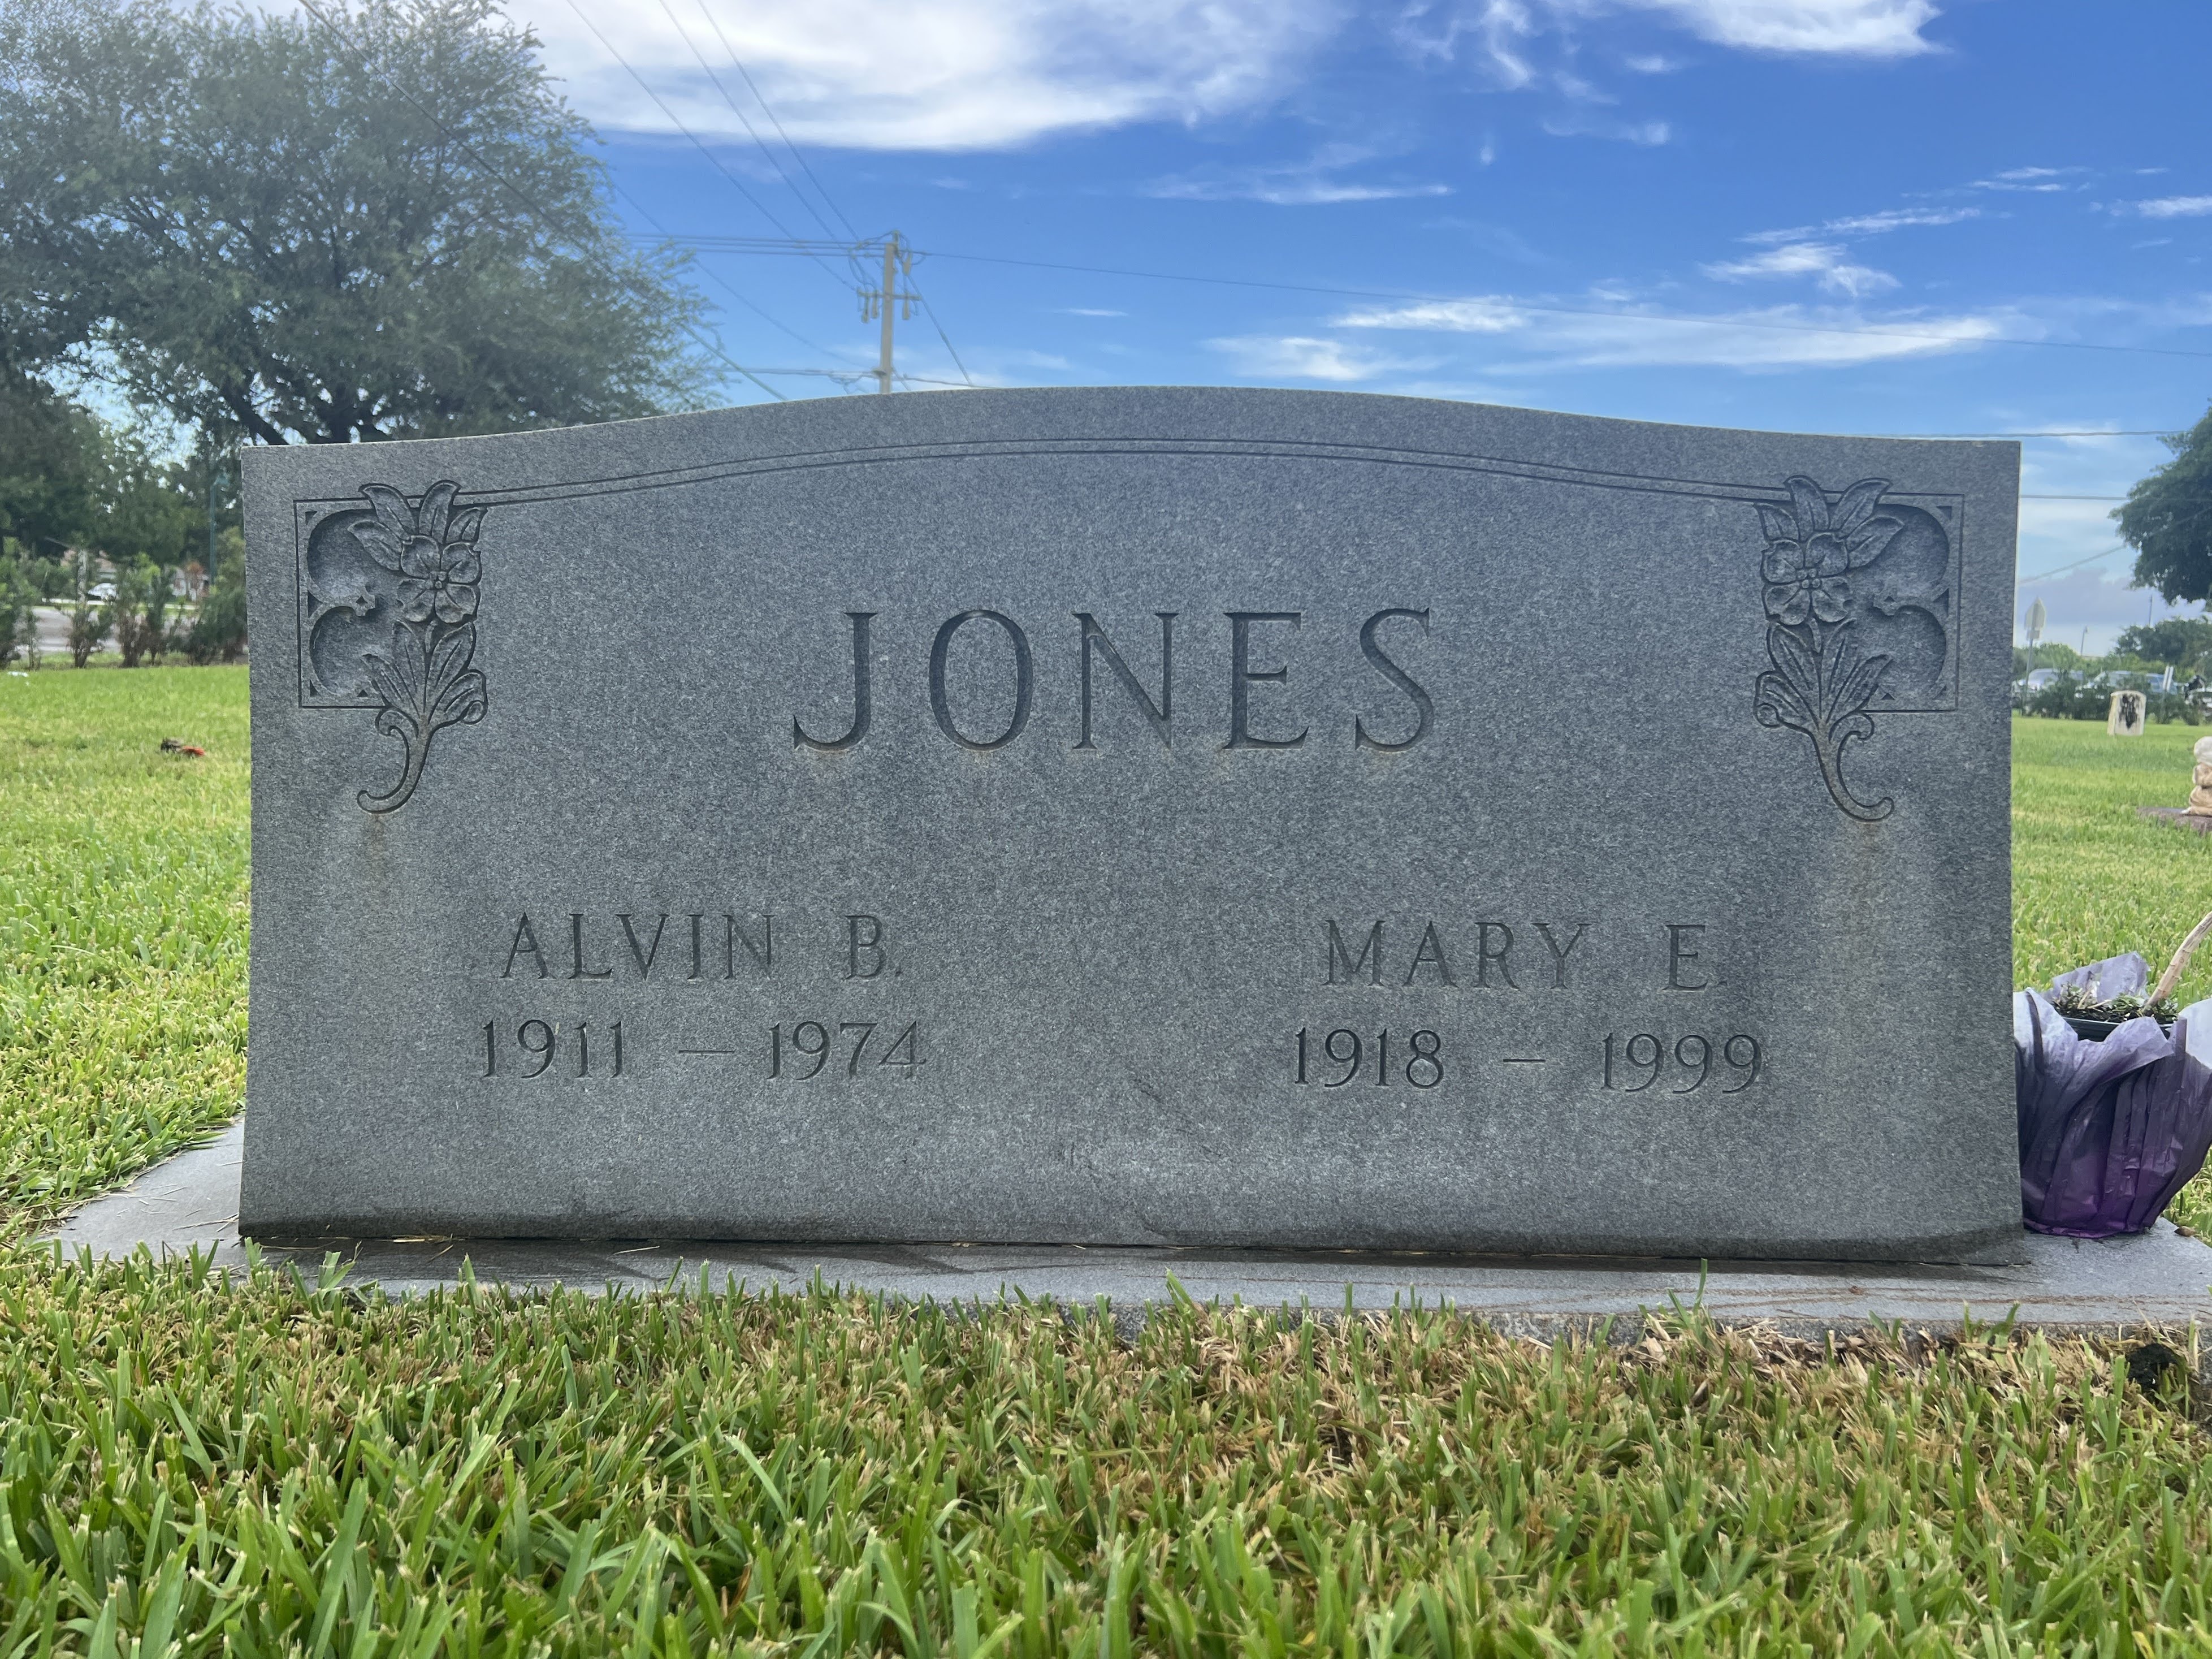 Mary E Jones